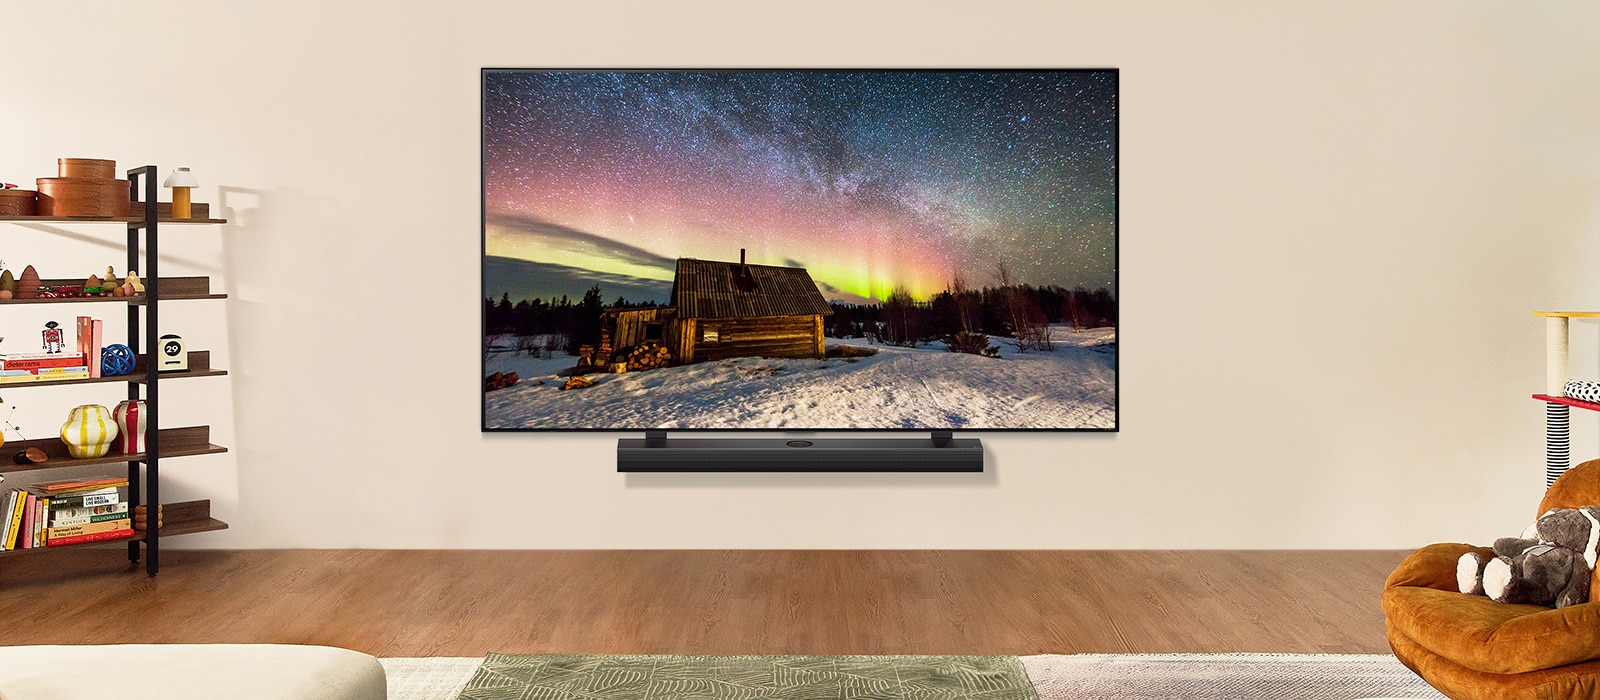 LG TV y LG Soundbar en un espacio moderno durante el día. La imagen en pantalla de la aurora boreal se muestra con los niveles de brillo ideales.